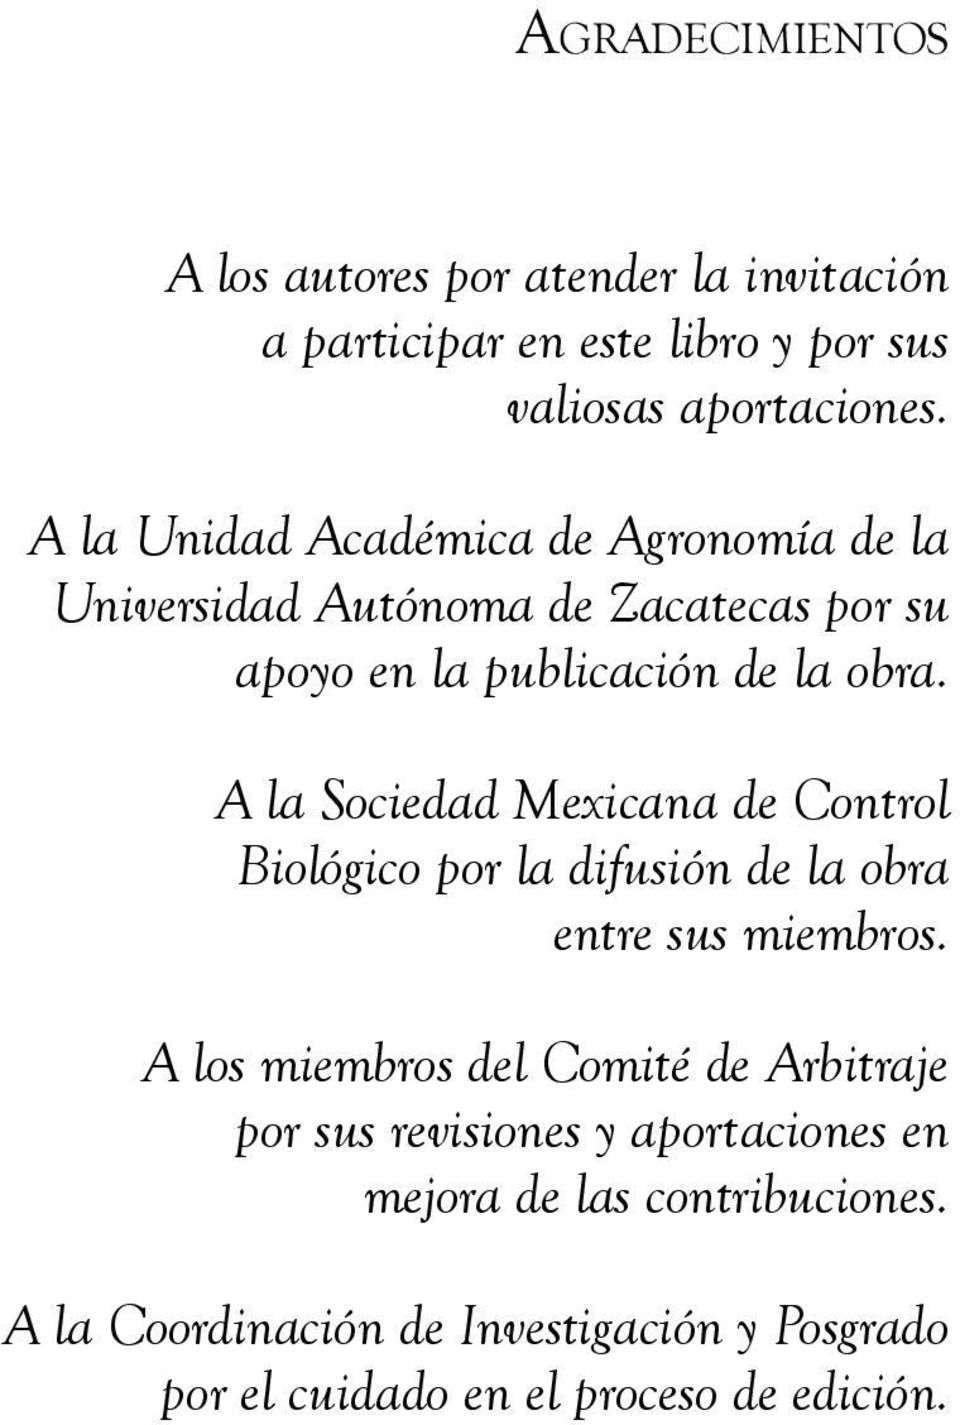 A la Sociedad Mexicana de Control Biológico por la difusión de la obra entre sus miembros.